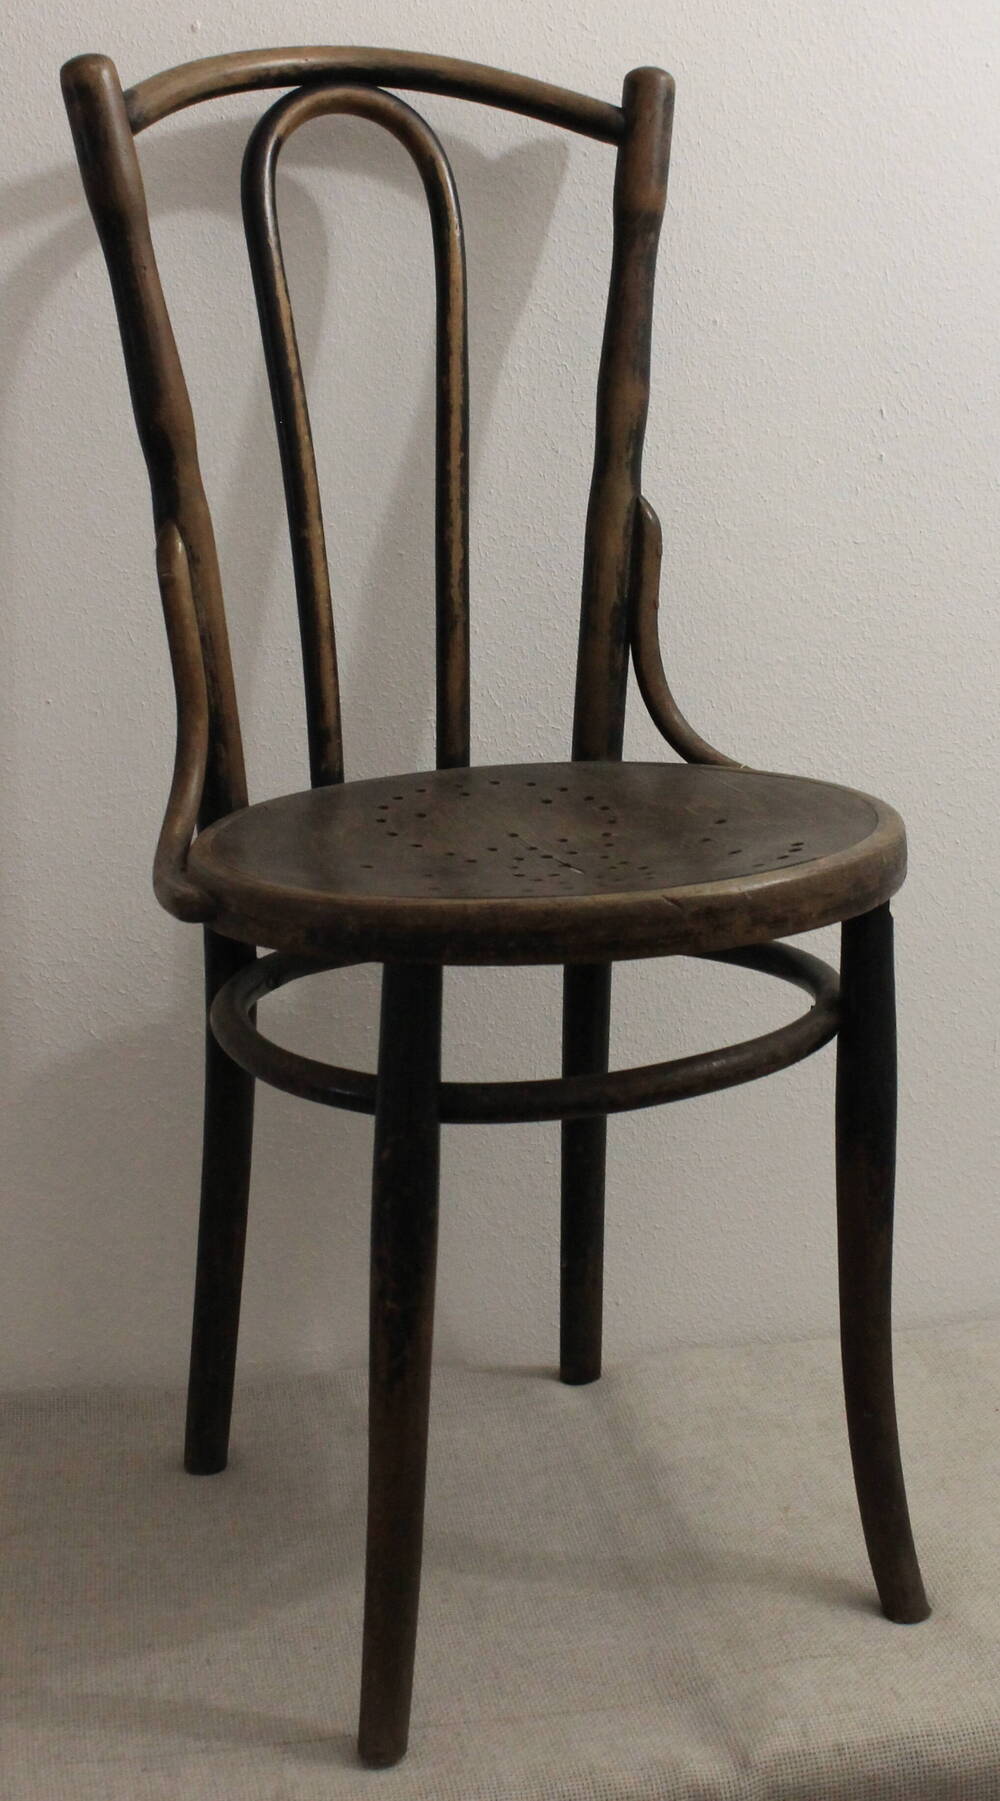 Стулья
венские с округлыми гнутыми спинками. На 3-х стульях рисунок. На сиденьях рисунок – отверстия. Один стул сиденье – без рисунка.